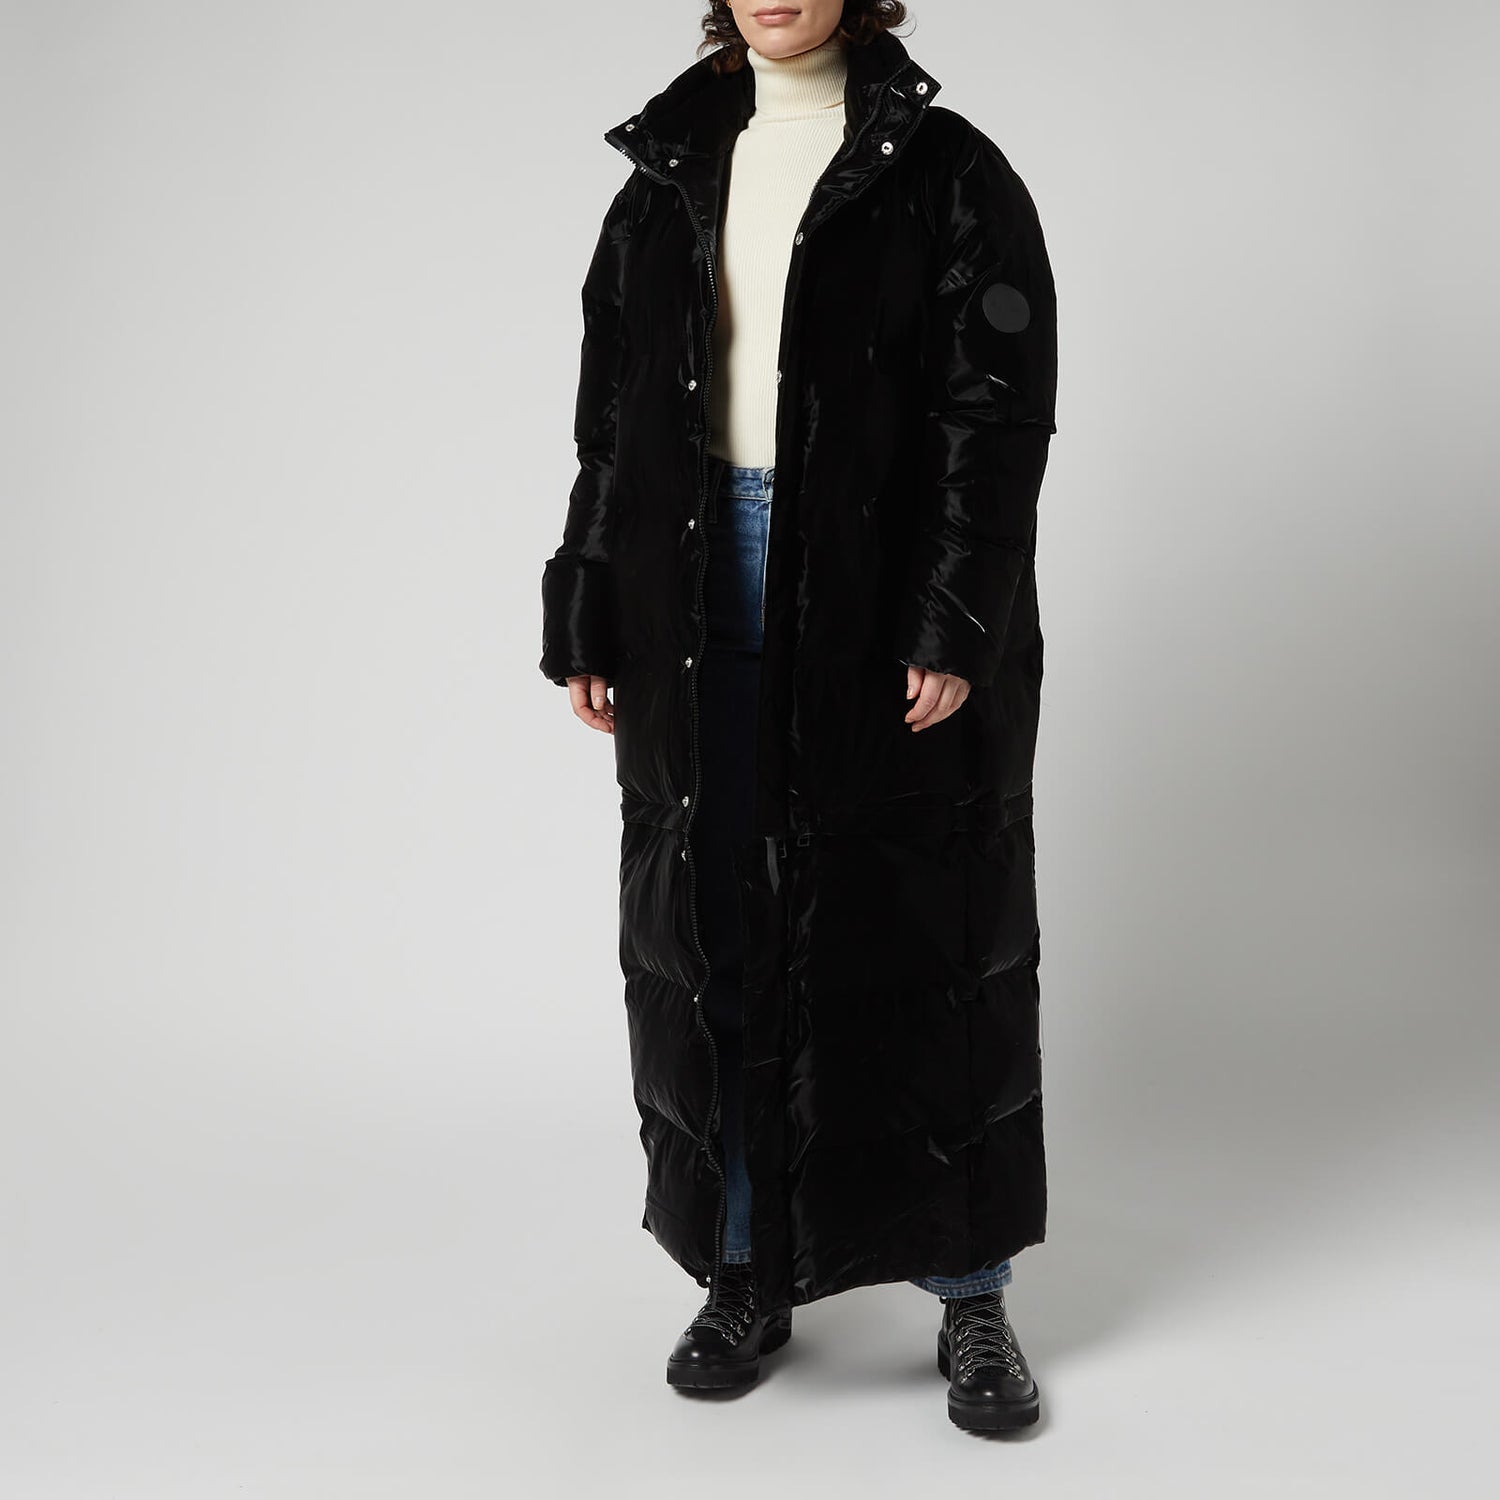 Rains Extra Long Puffer Coat - Velvet Black - XS/S